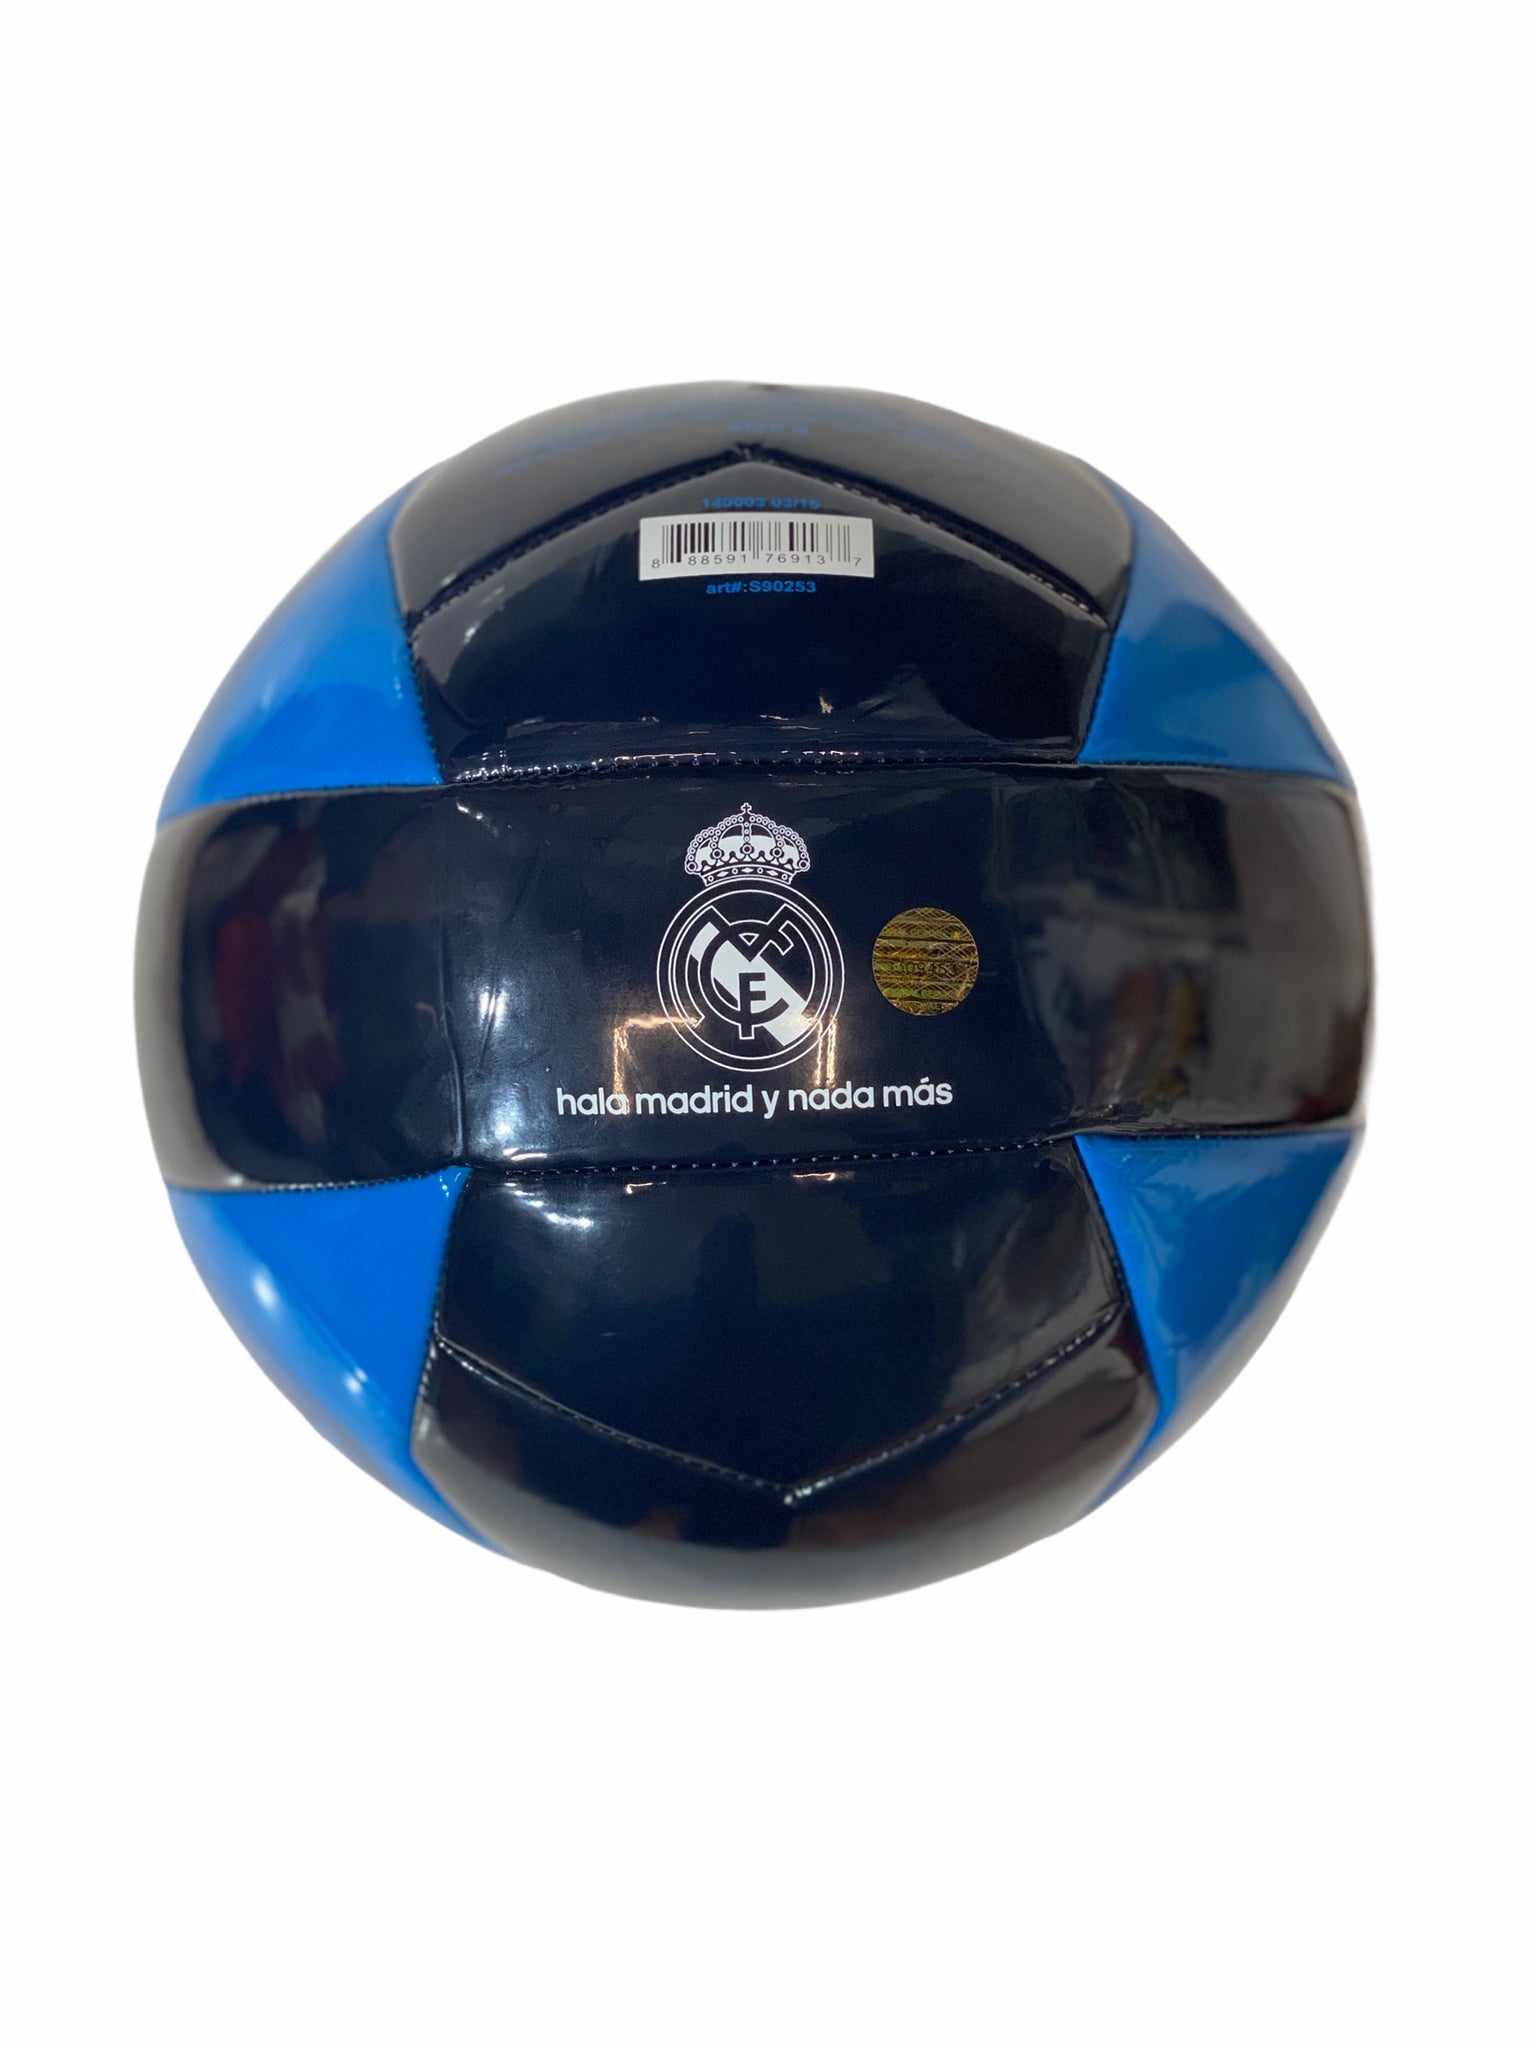 RhinoxGruop - Balón de fútbol oficial del Real Madrid, tamaño completo 5  (gris L1Y43)